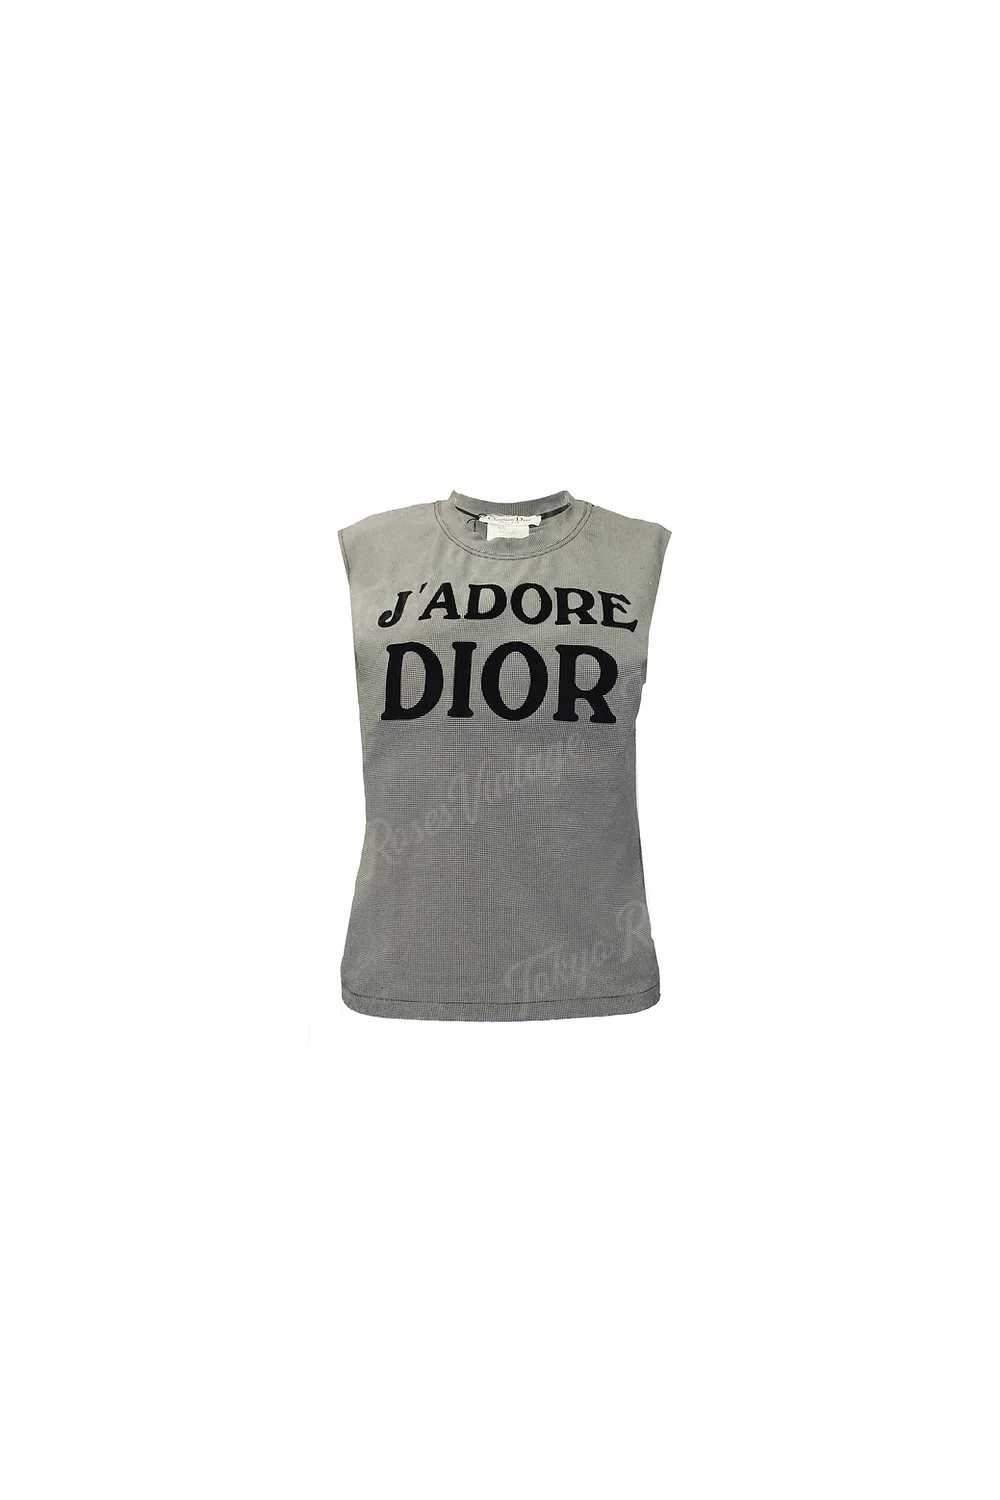 Christian Dior Black Check J'adore Dior Logo Prin… - image 1